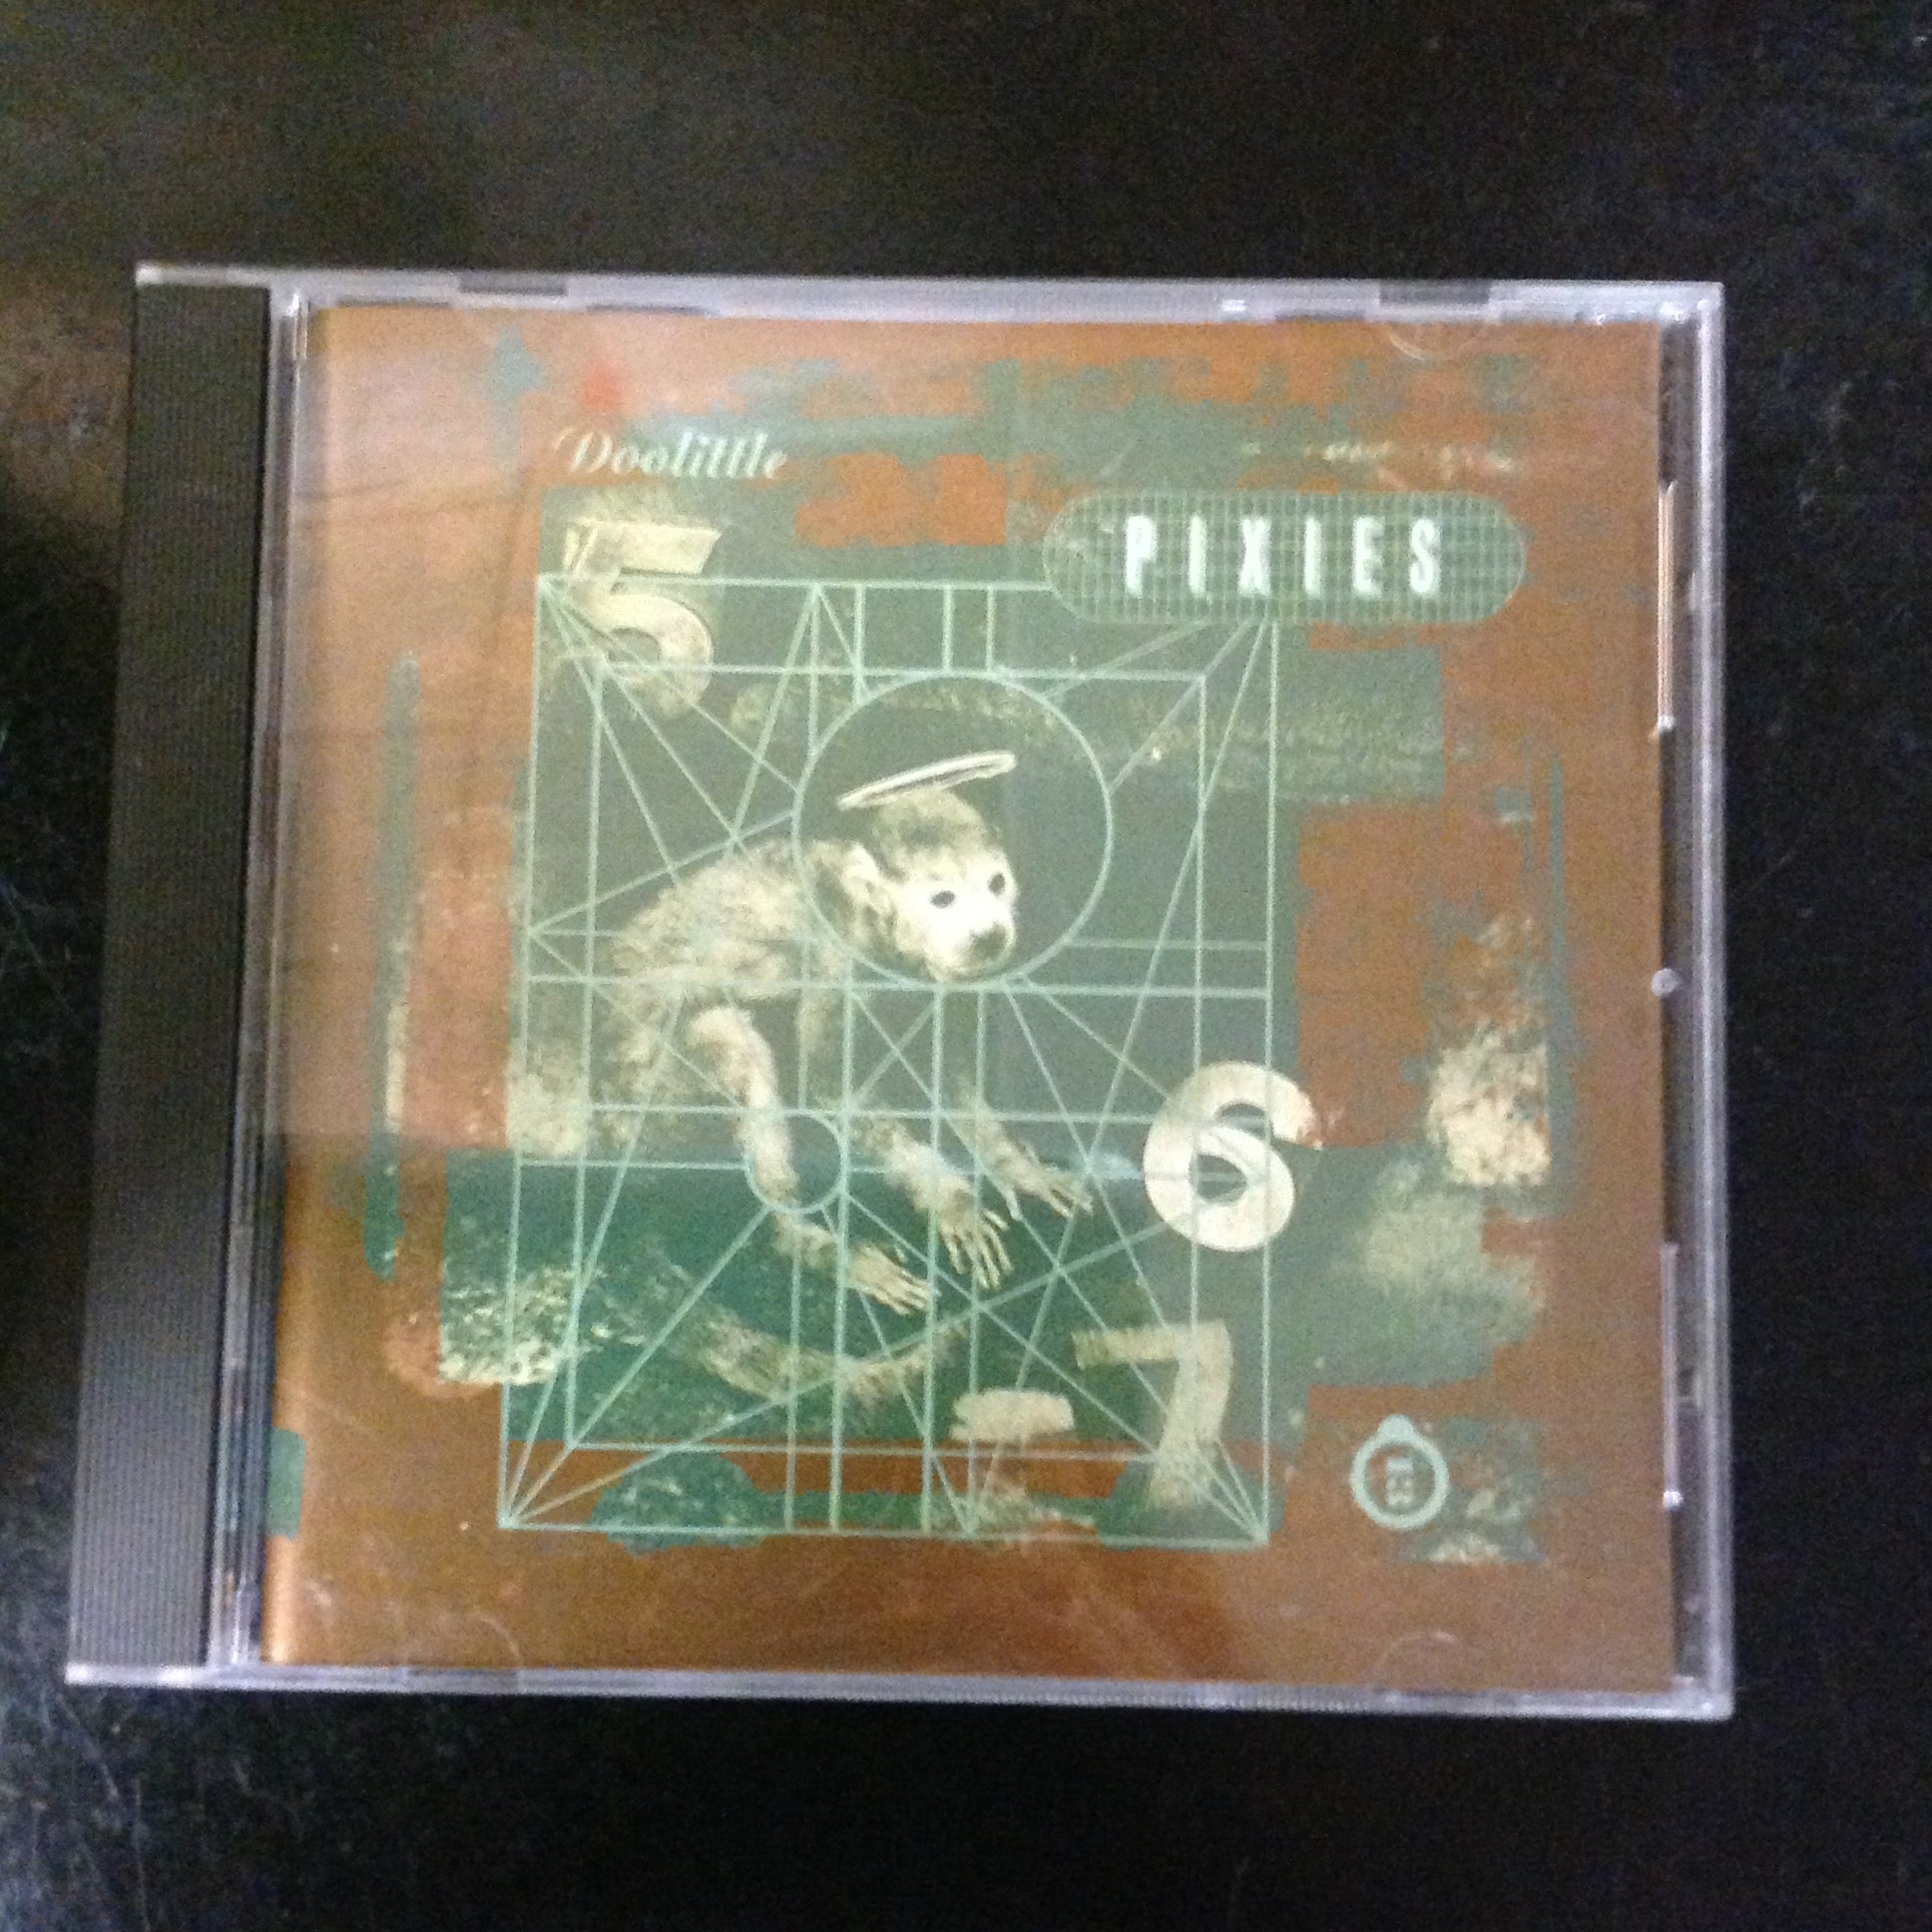 CD Pixies Doolittle 960856-2 Rock Indie